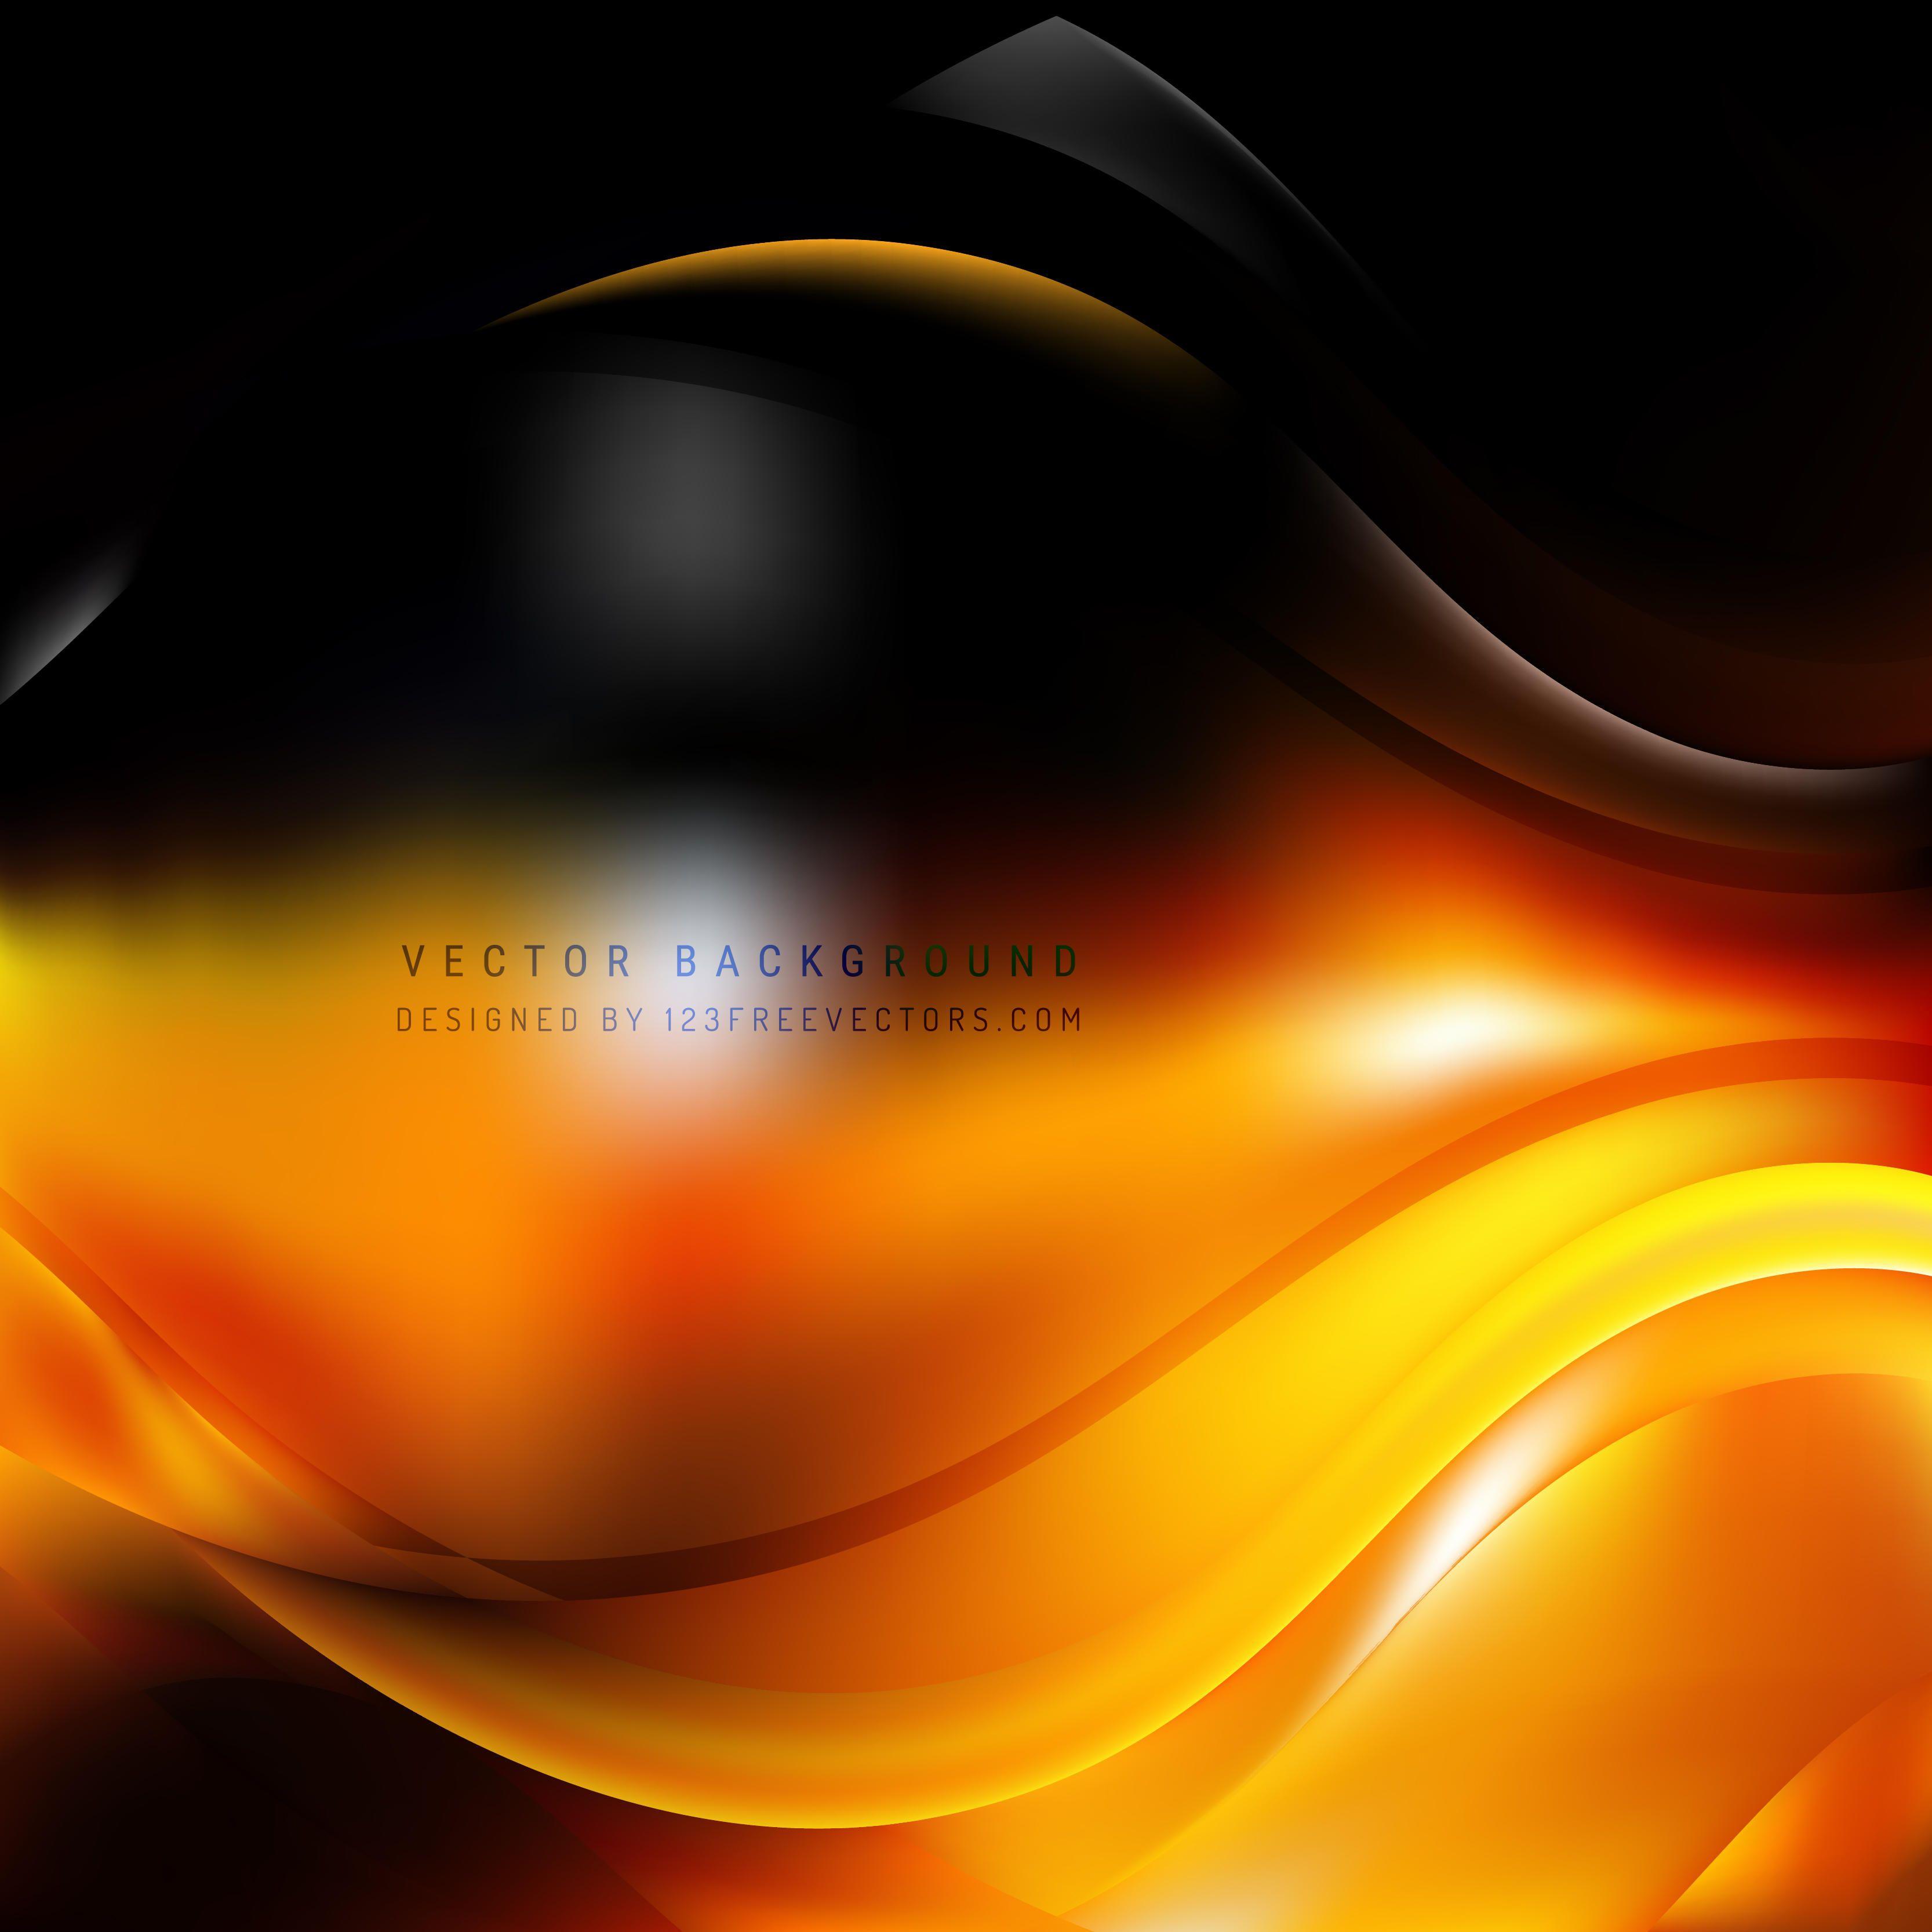 Cool Orange Background Vectors. Download Free Vector Art